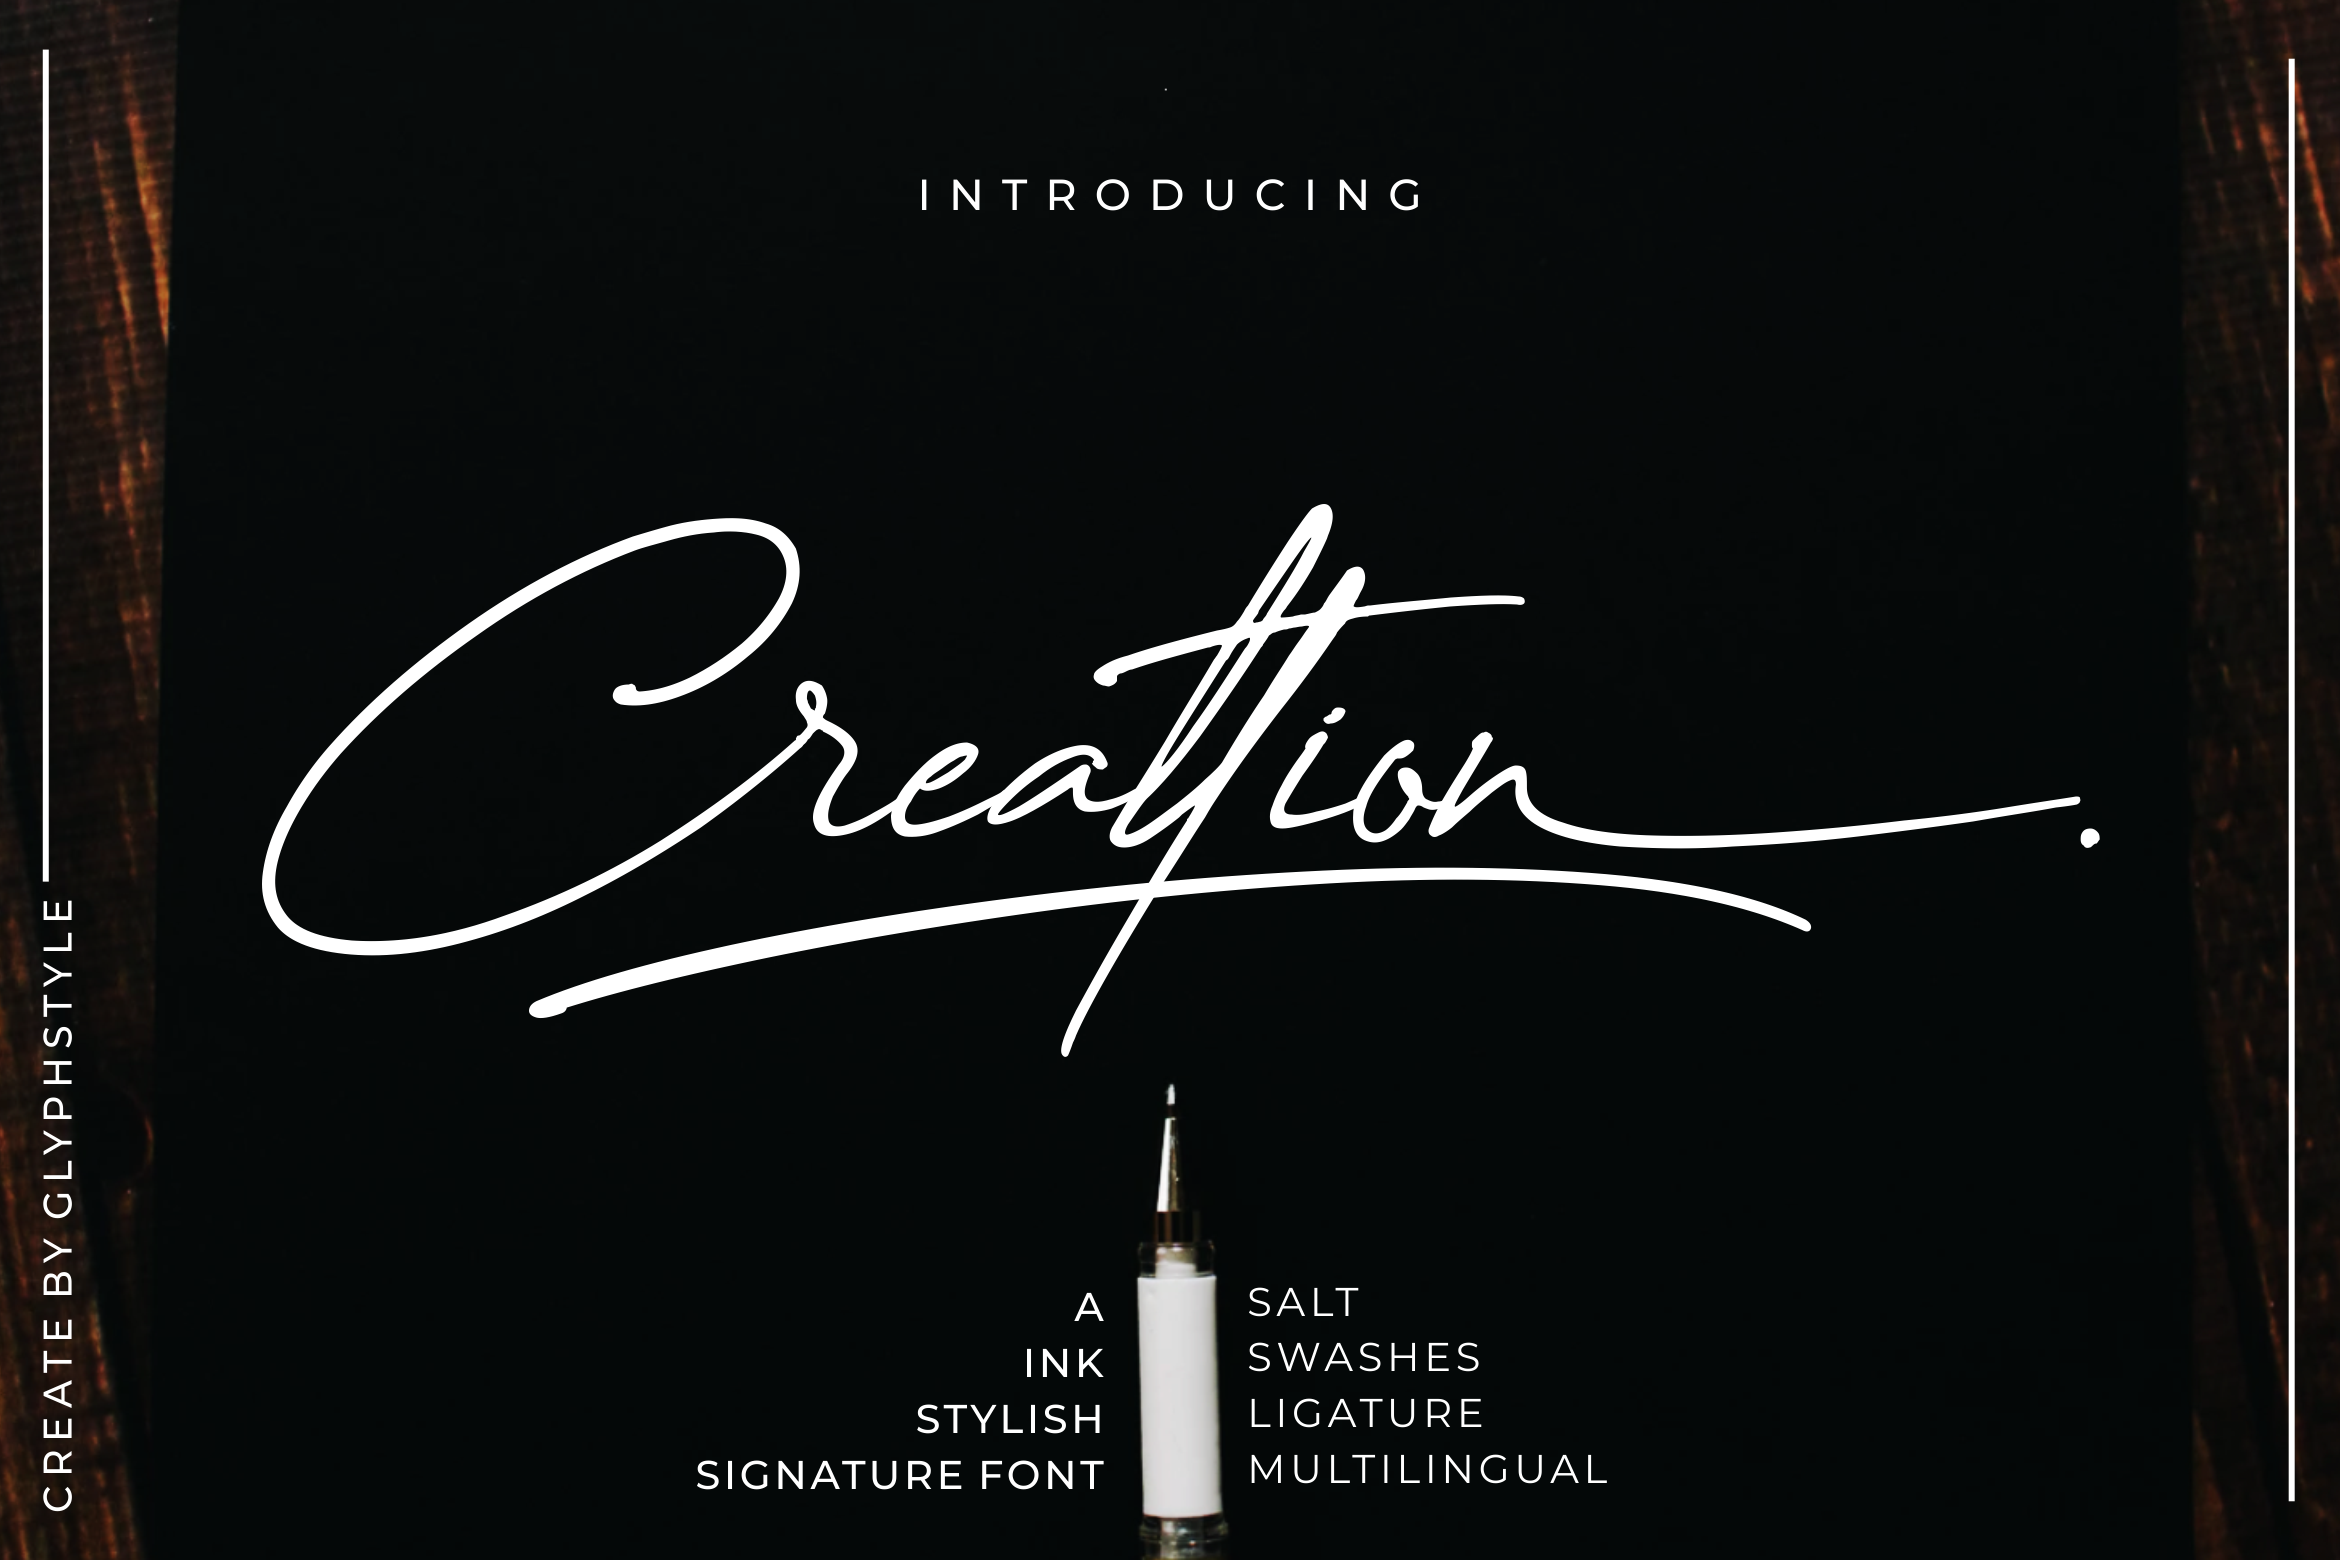 Creattion Signature